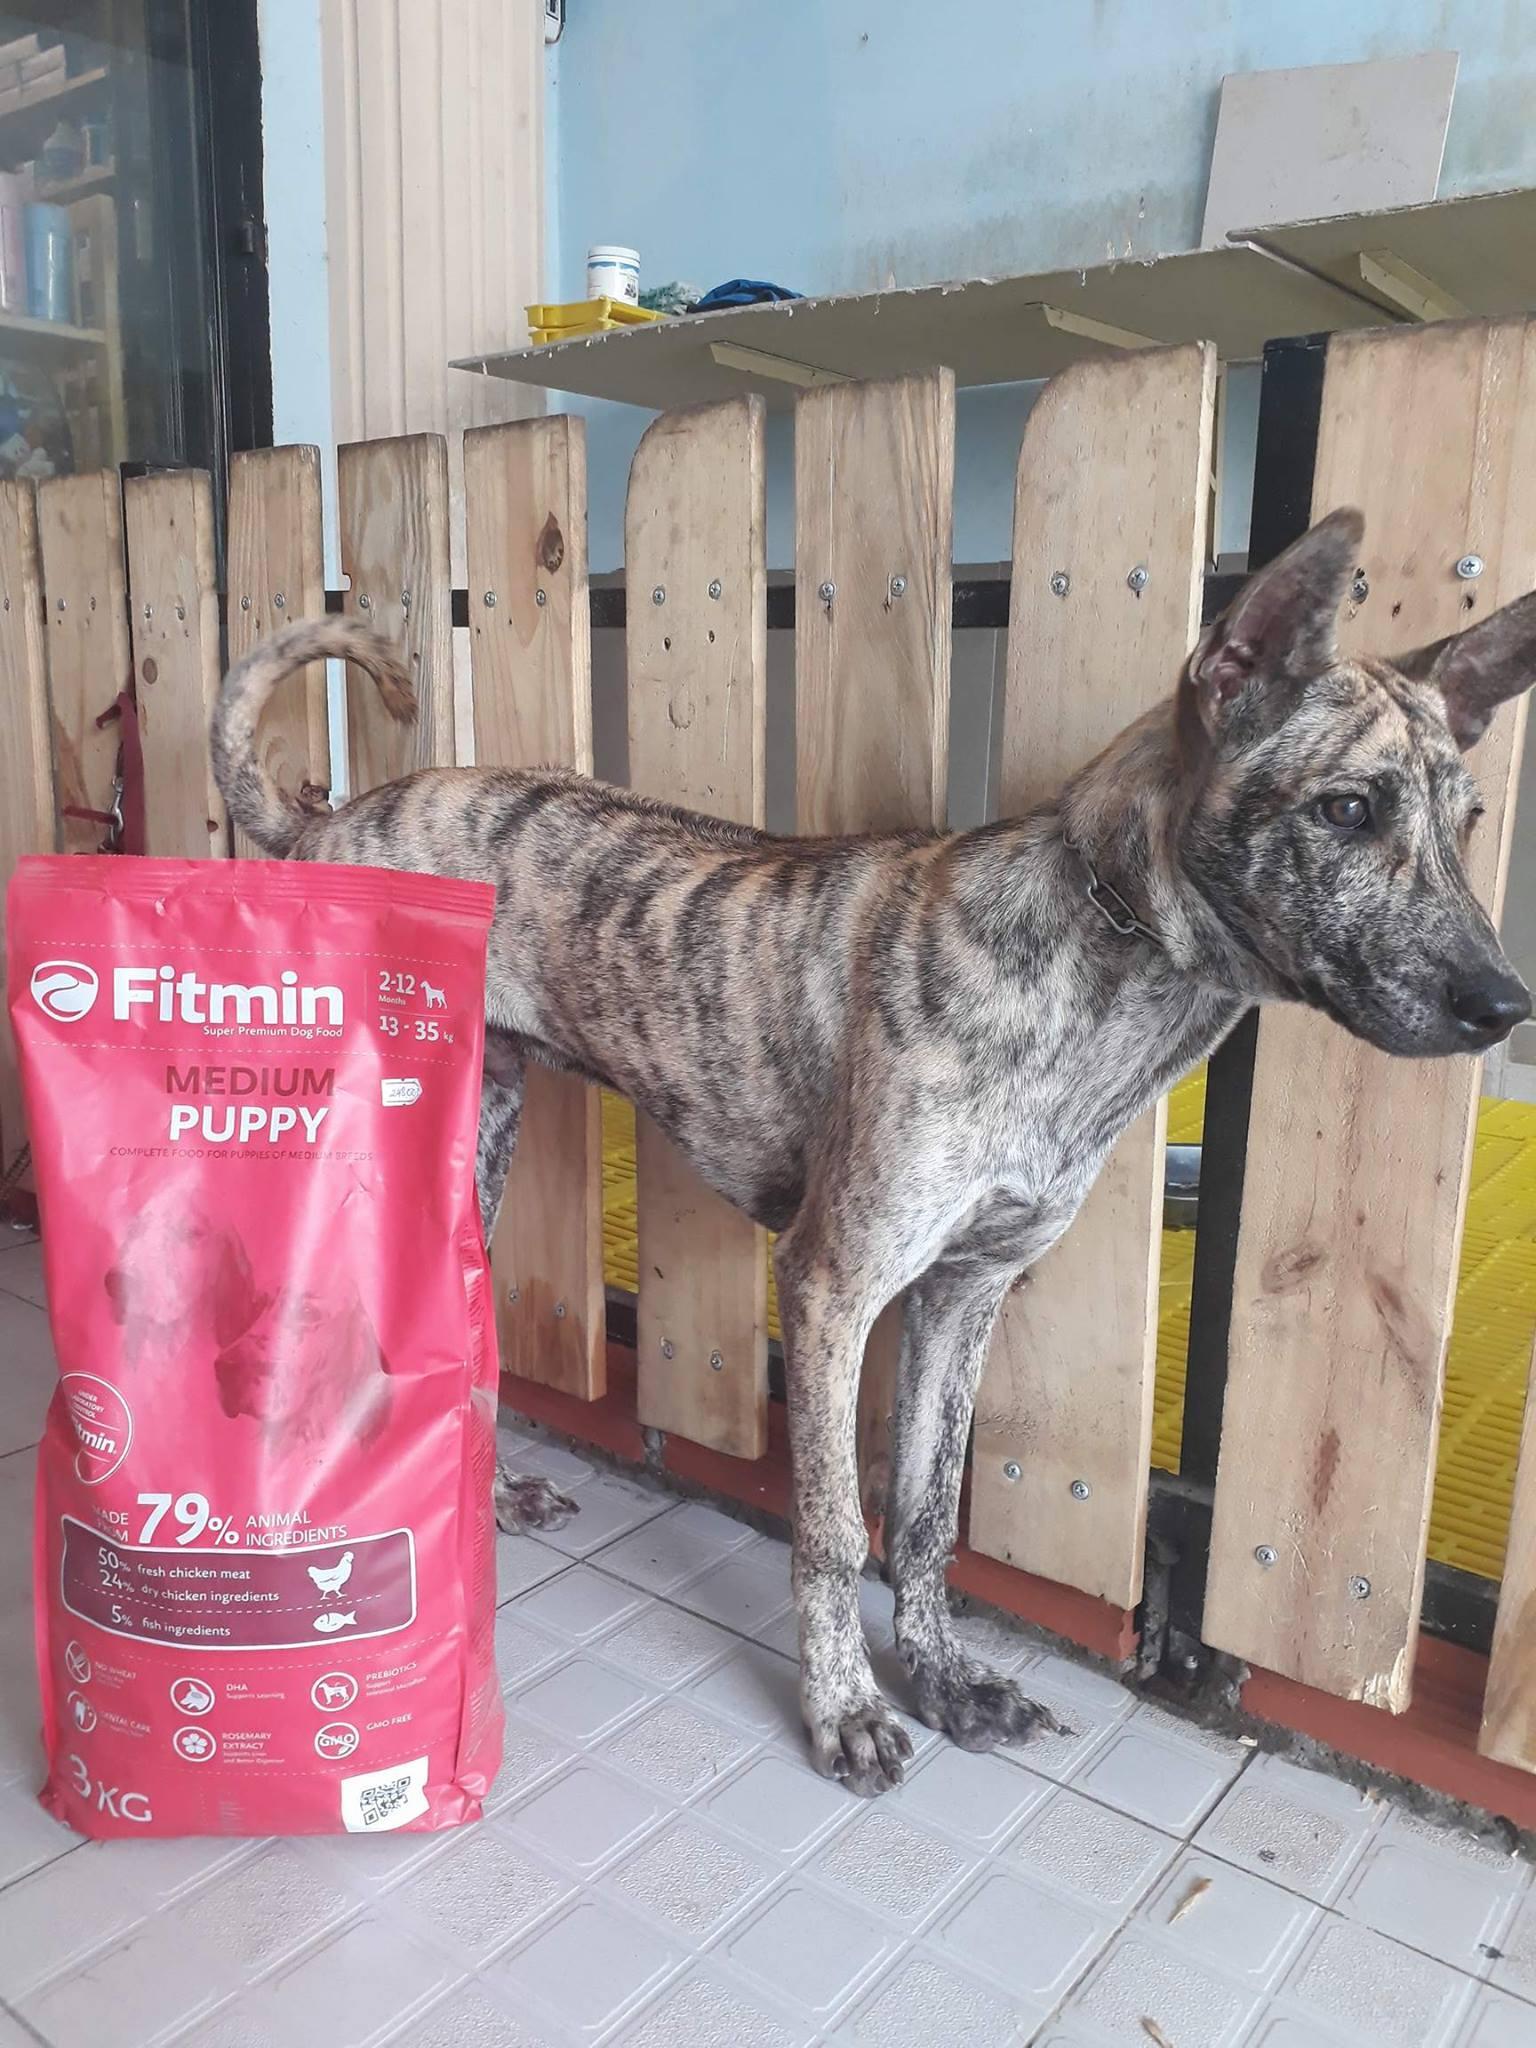 Thức ăn cho chó Fitmin Medium Puppy - 3kg, dành cho chó con giống vừa